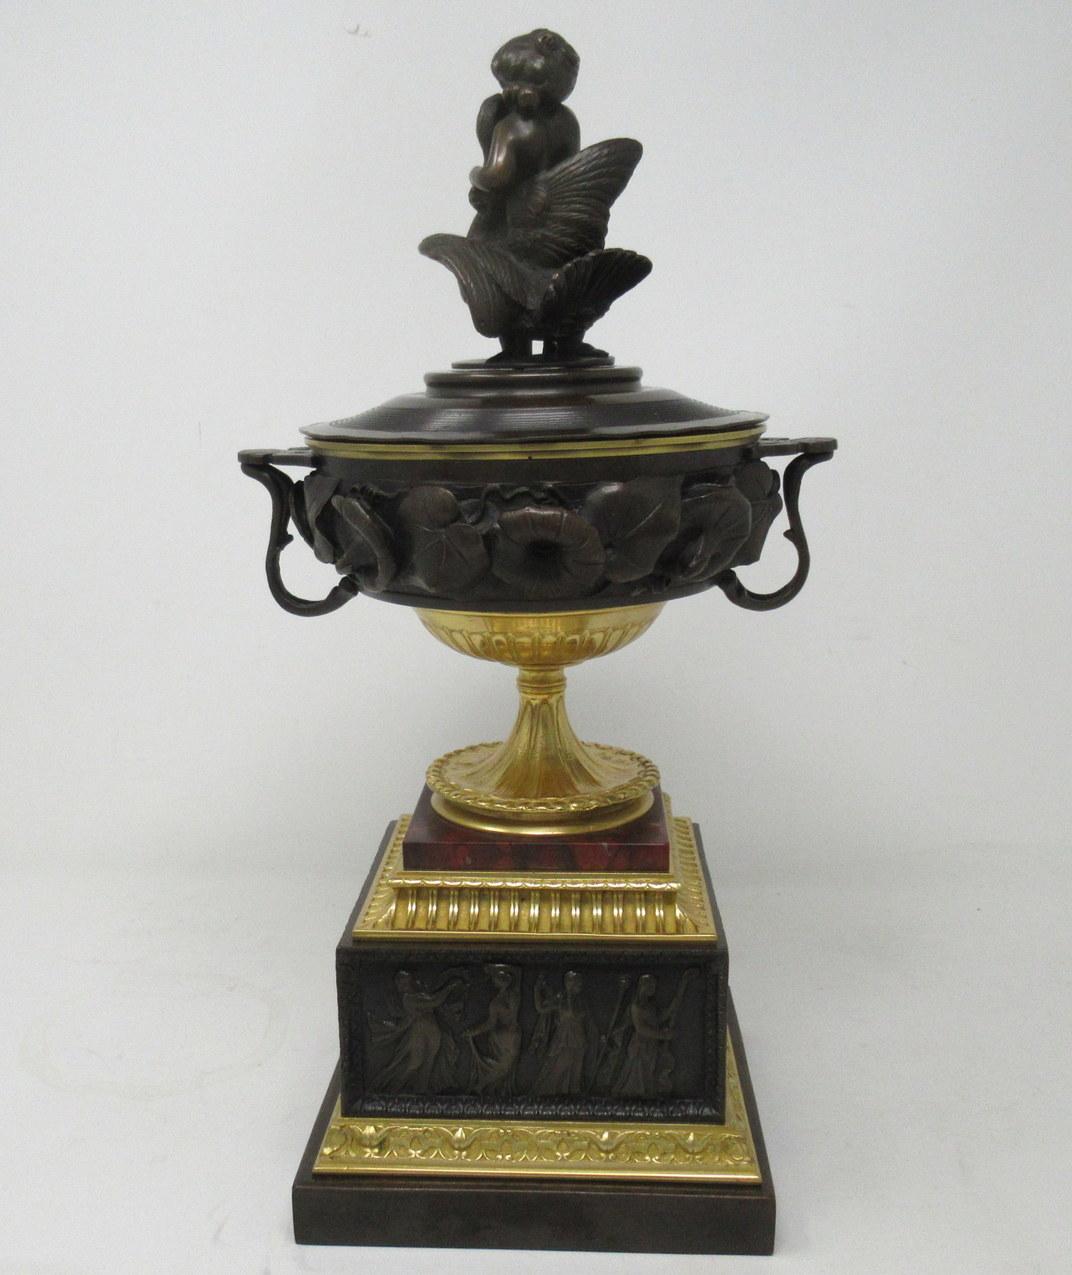 Superbe exemple d'une urne à deux anses de qualité muséale, avec couvercle en bronze et bronze doré. Premier quart du XIXe siècle, peut-être période Régence. 

La coupe principale est ornée d'un riche décor de feuilles et de fleurs appliquées en